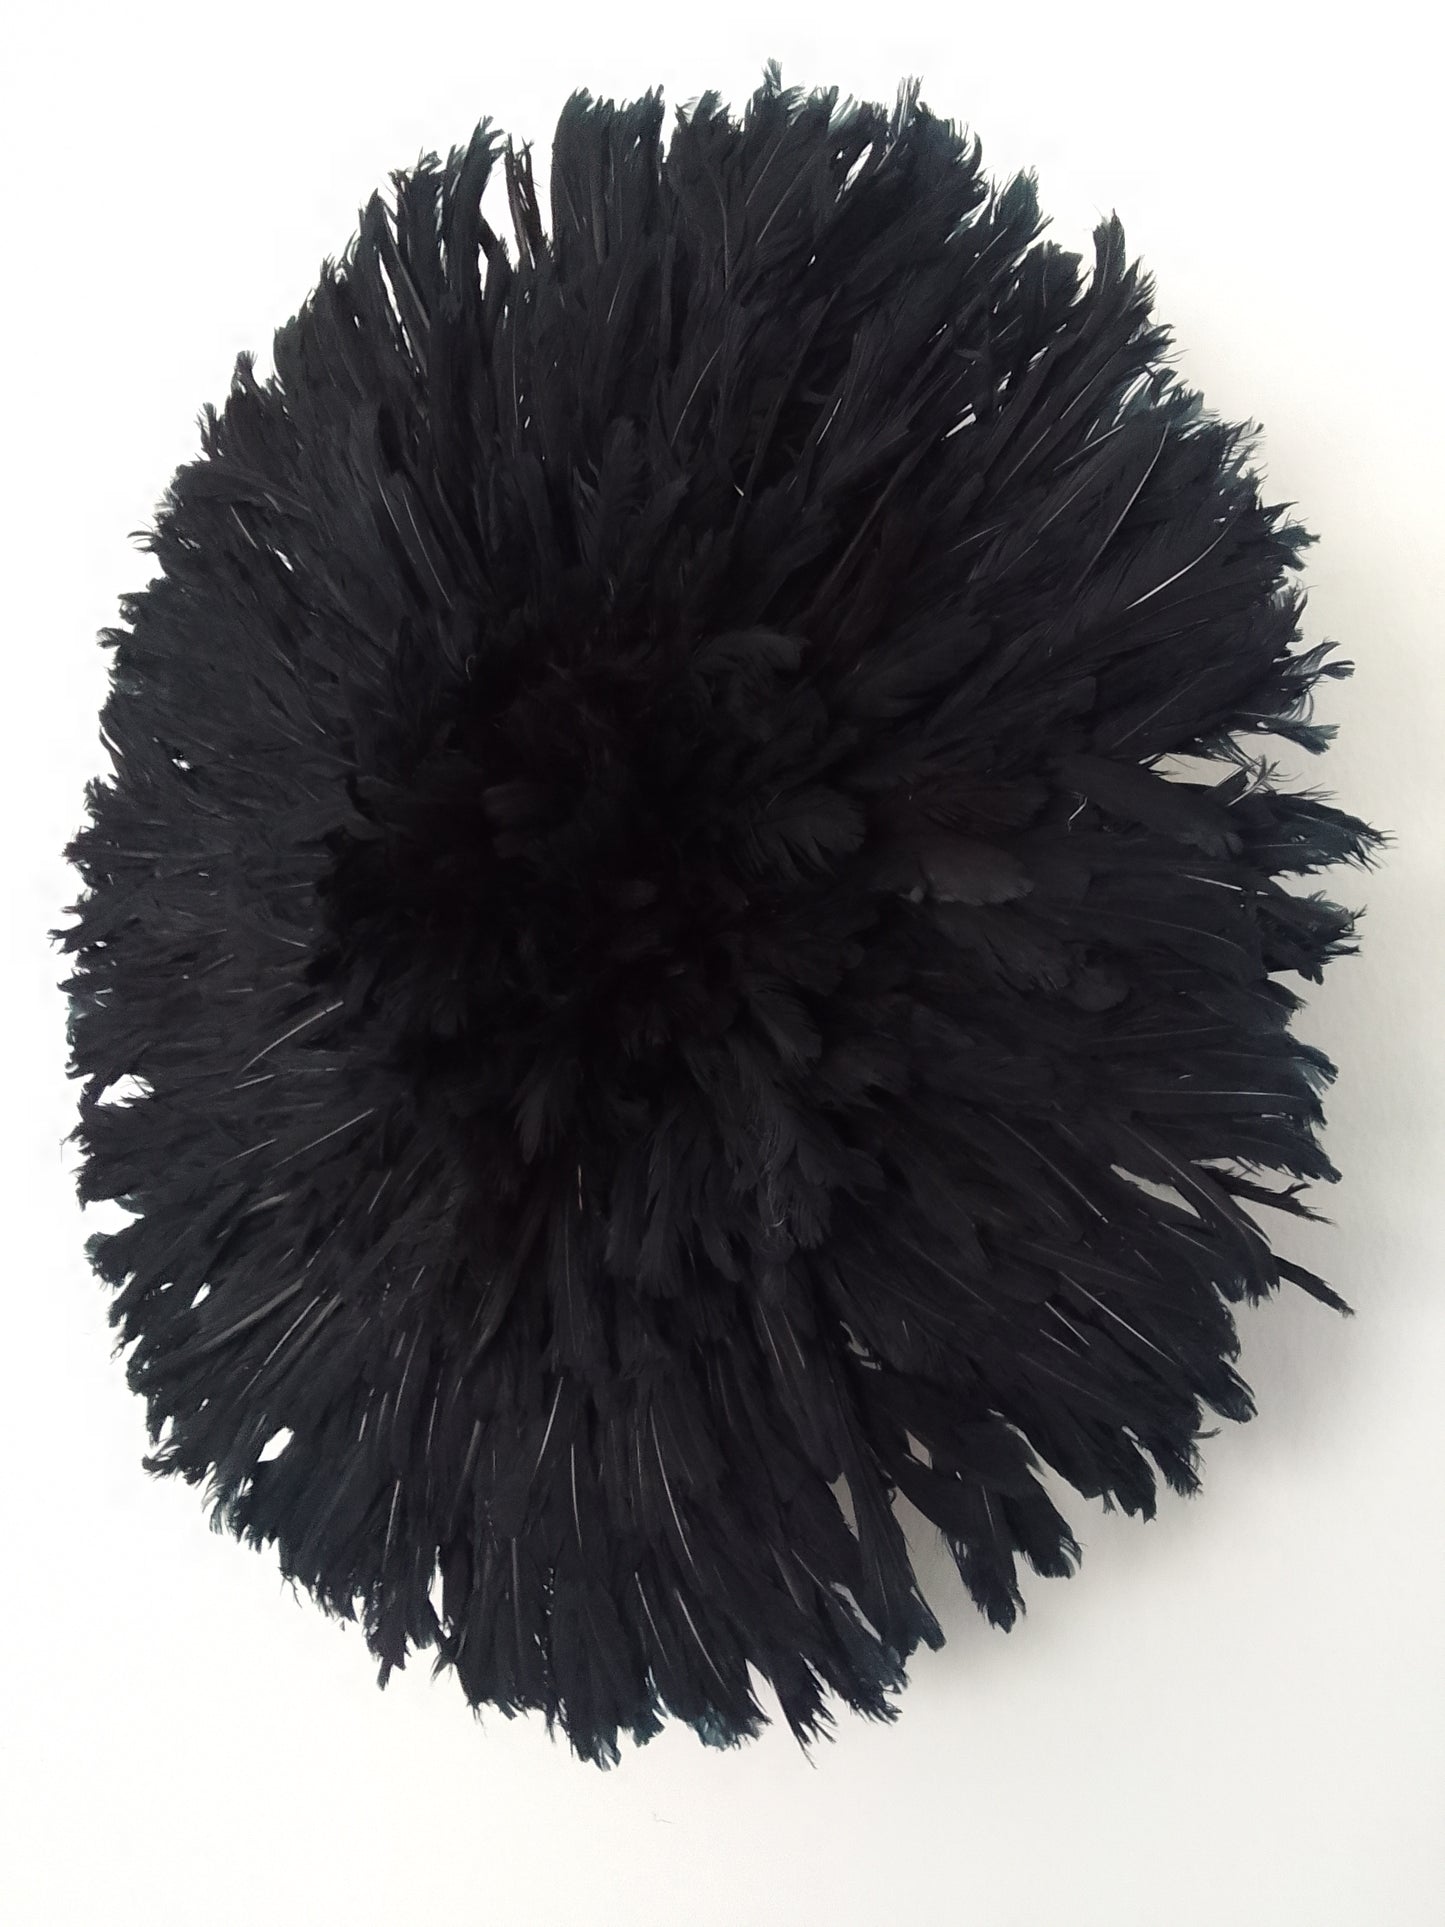 Juju hat black of 80 cm